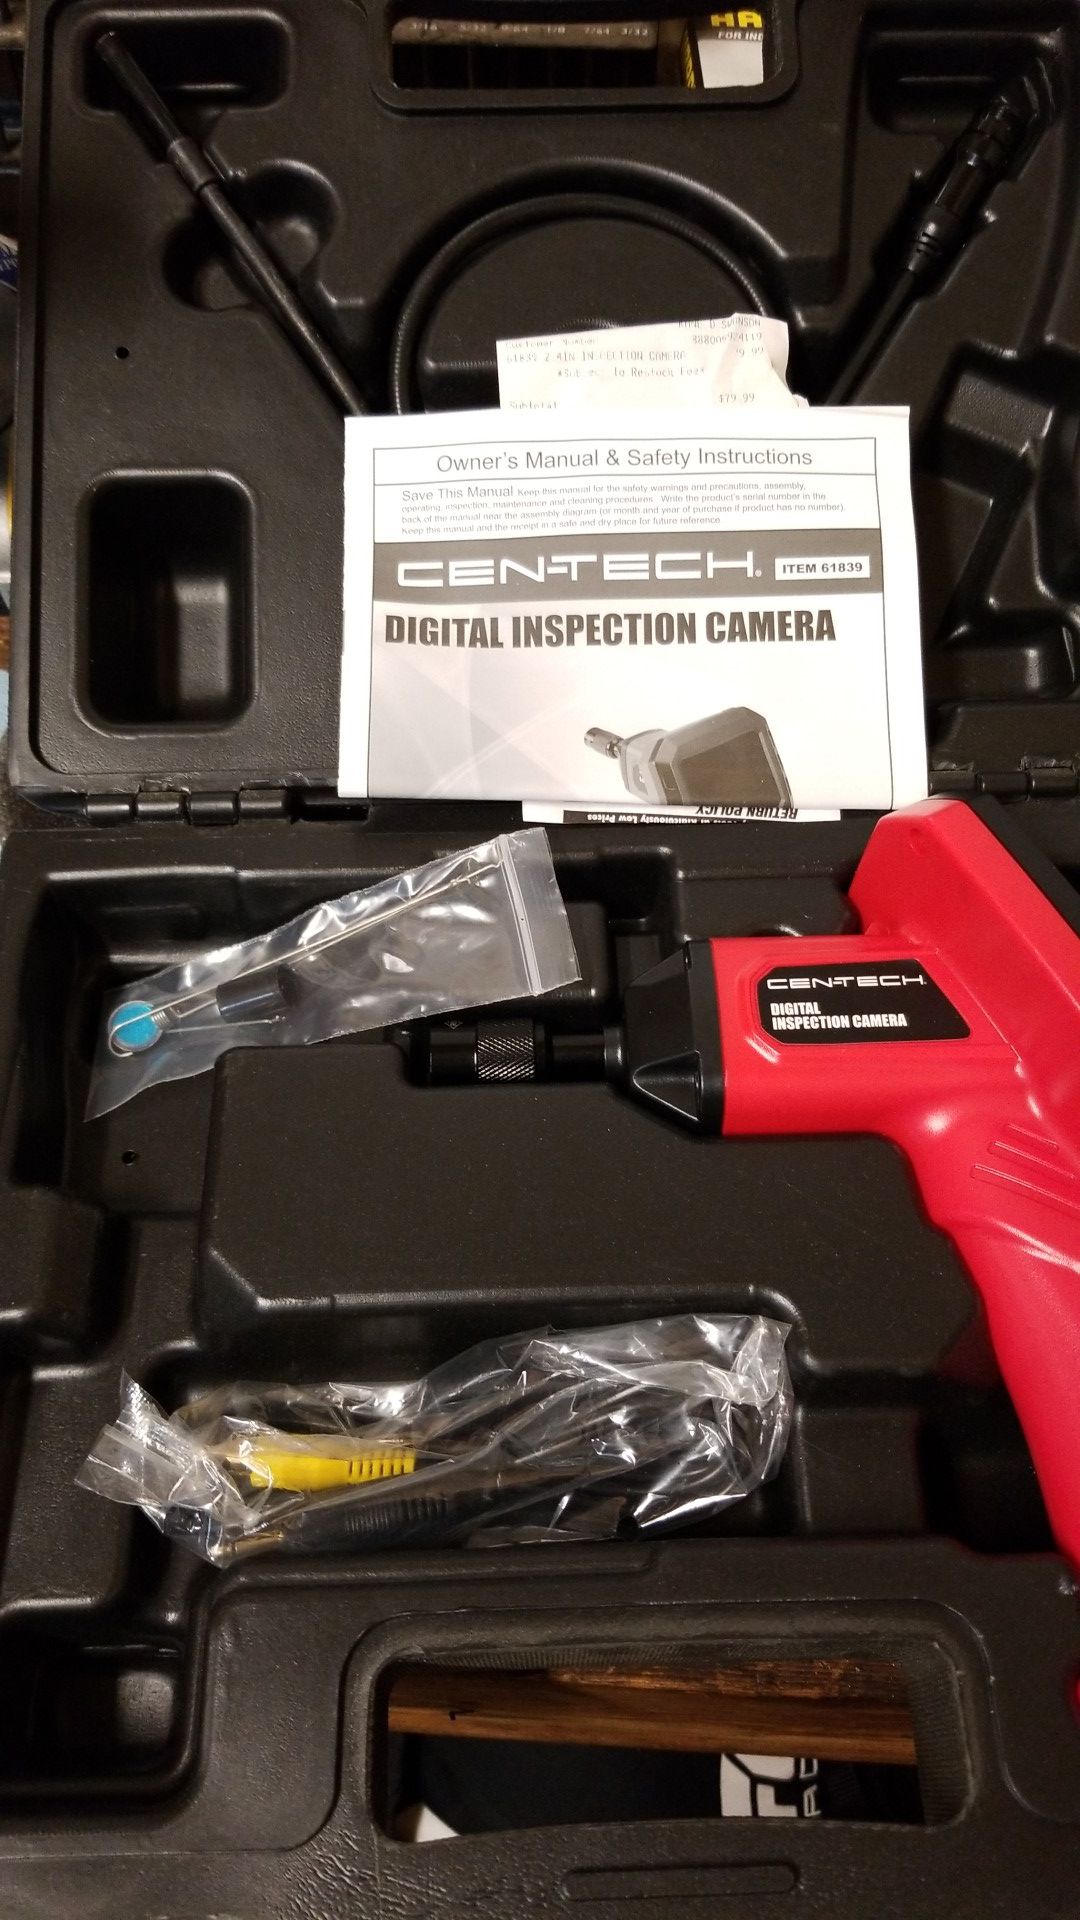 Cen-tech digital inspection camera